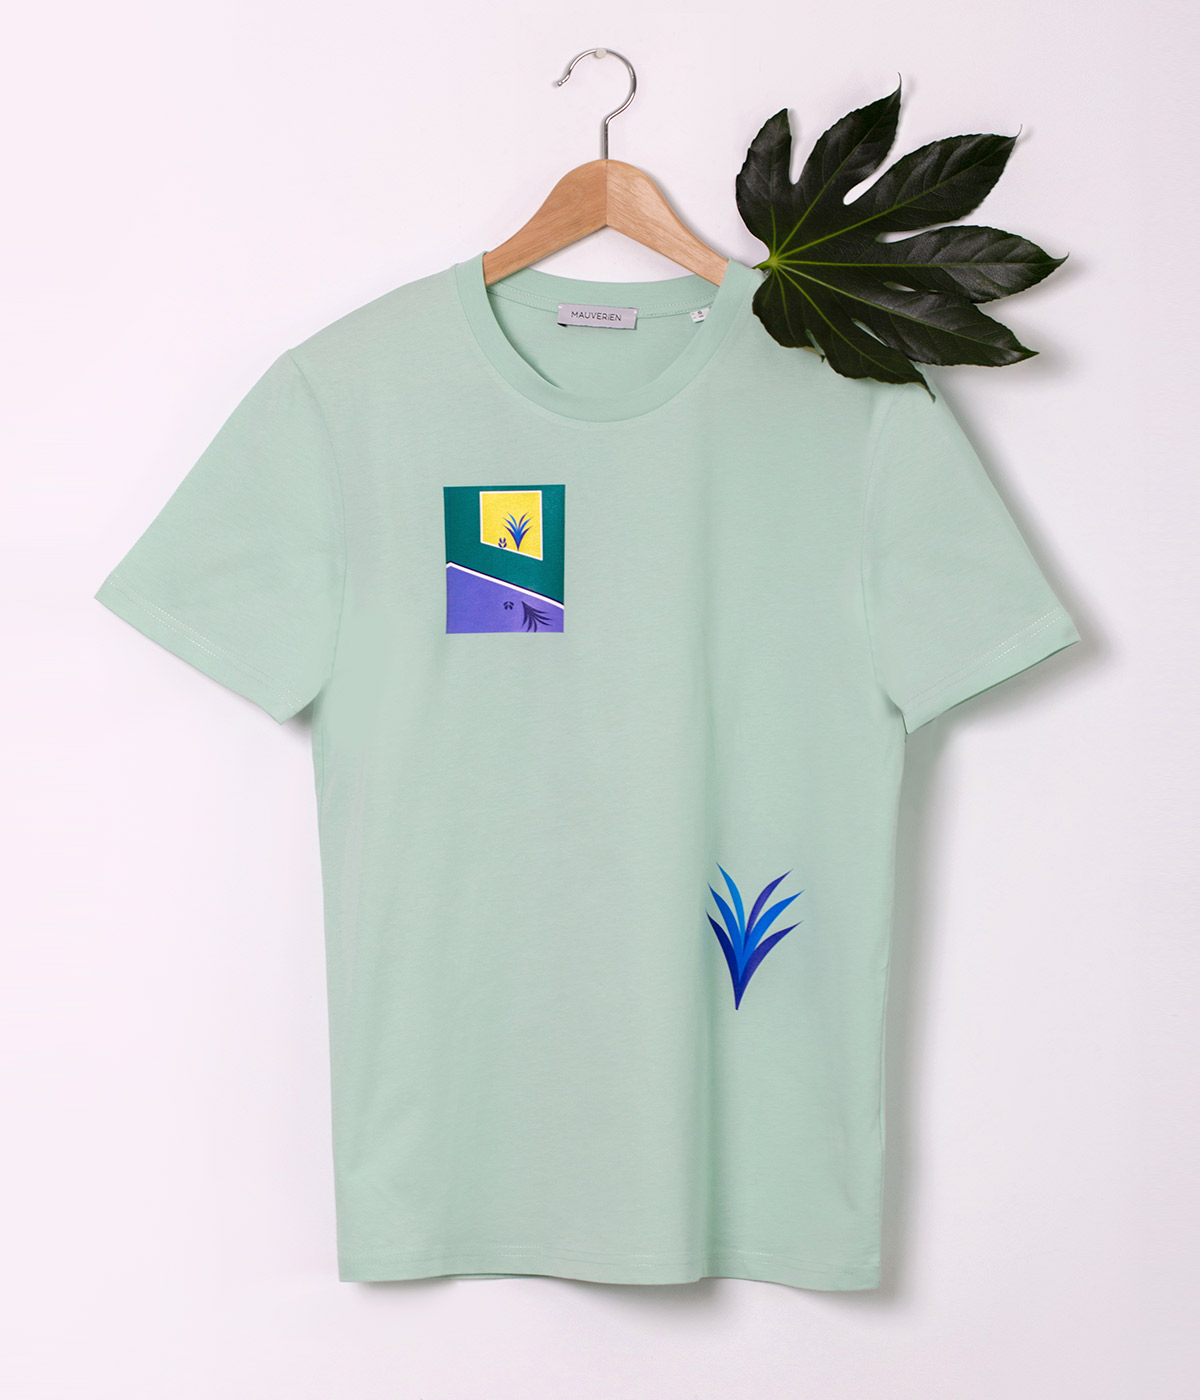 Fata unui tricou verde menta imprimat cu plante colorate in verde, mov si galben si pozitionate intr-un dreptunghi.